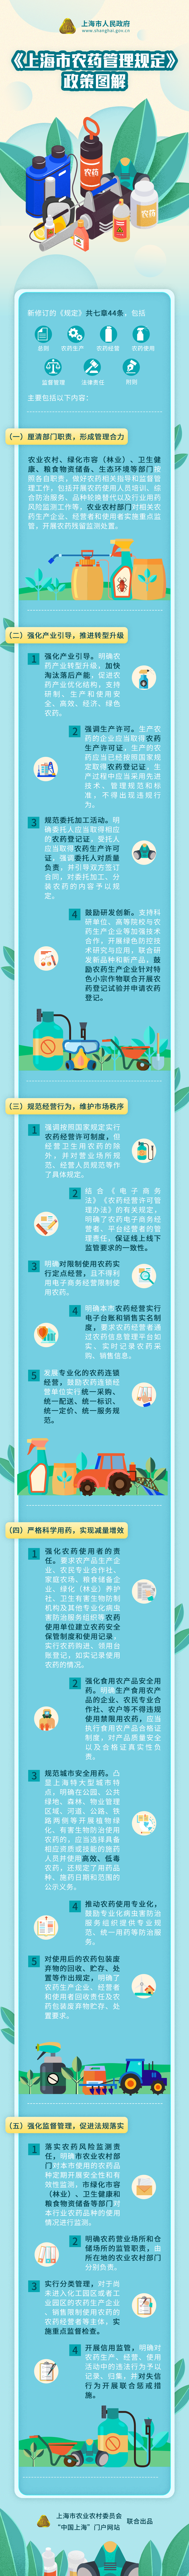 《上海市农药管理规定》政策图解.png